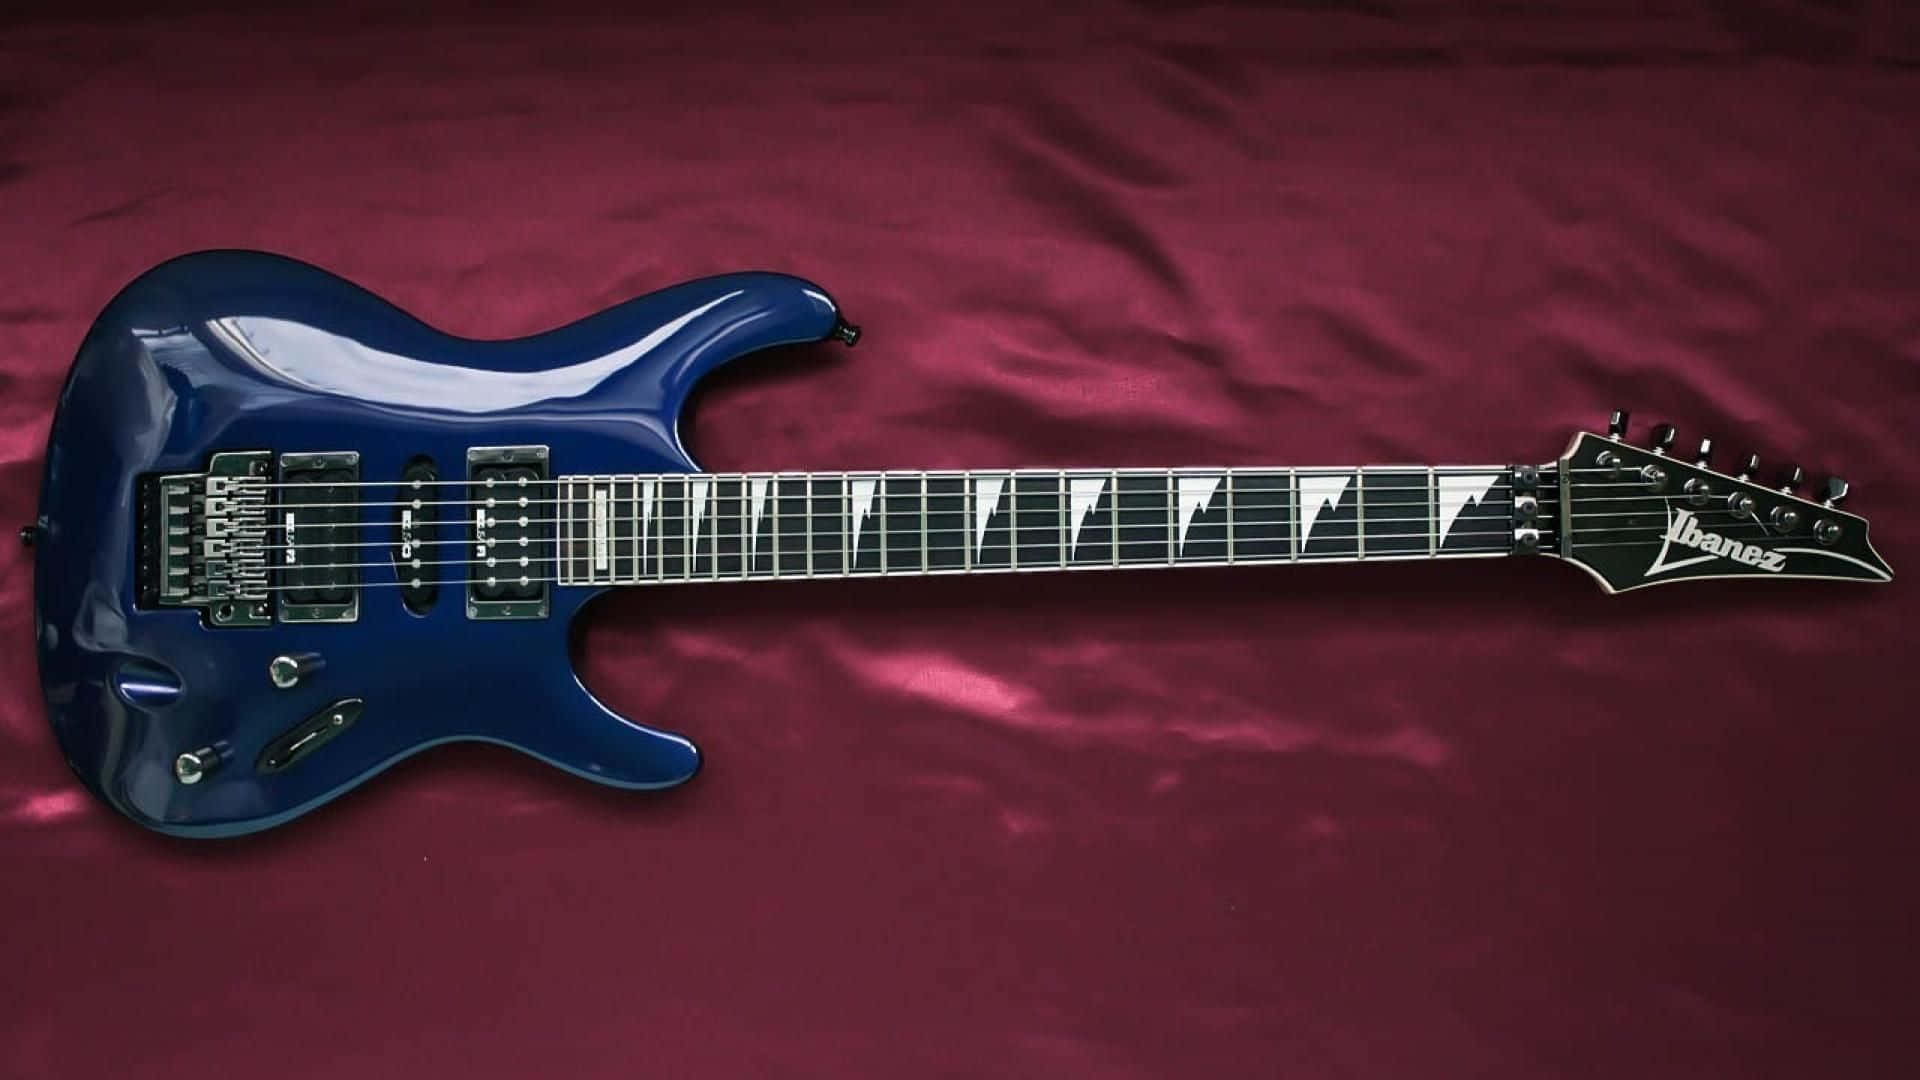 Enblå Elektrisk Guitar Med En Sort Krop.